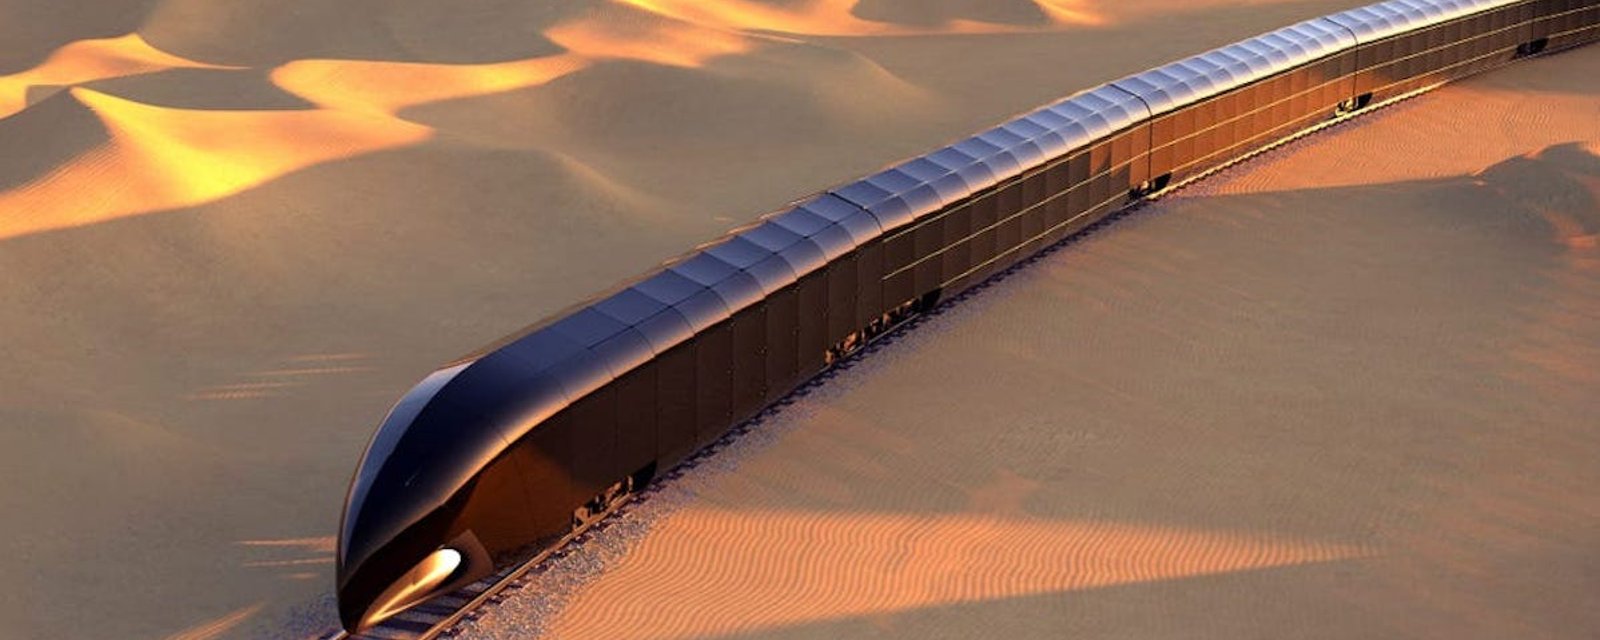 Le premier train de luxe privé au monde pourrait voir le jour